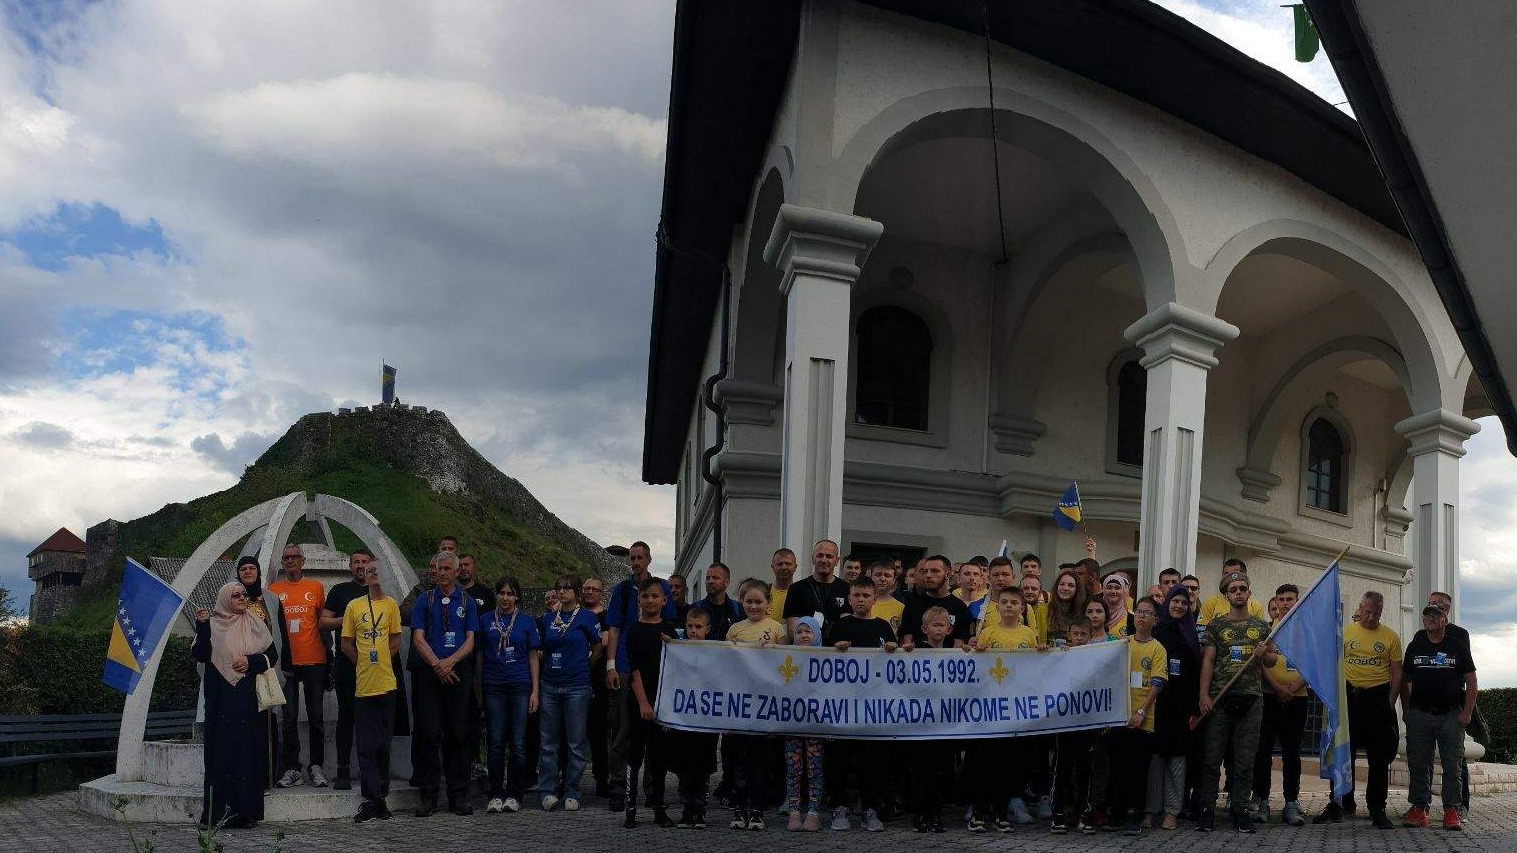 Marš mira "Doboj 2023" - Obilježena 31. godišnjica progona Bošnjaka iz Doboja